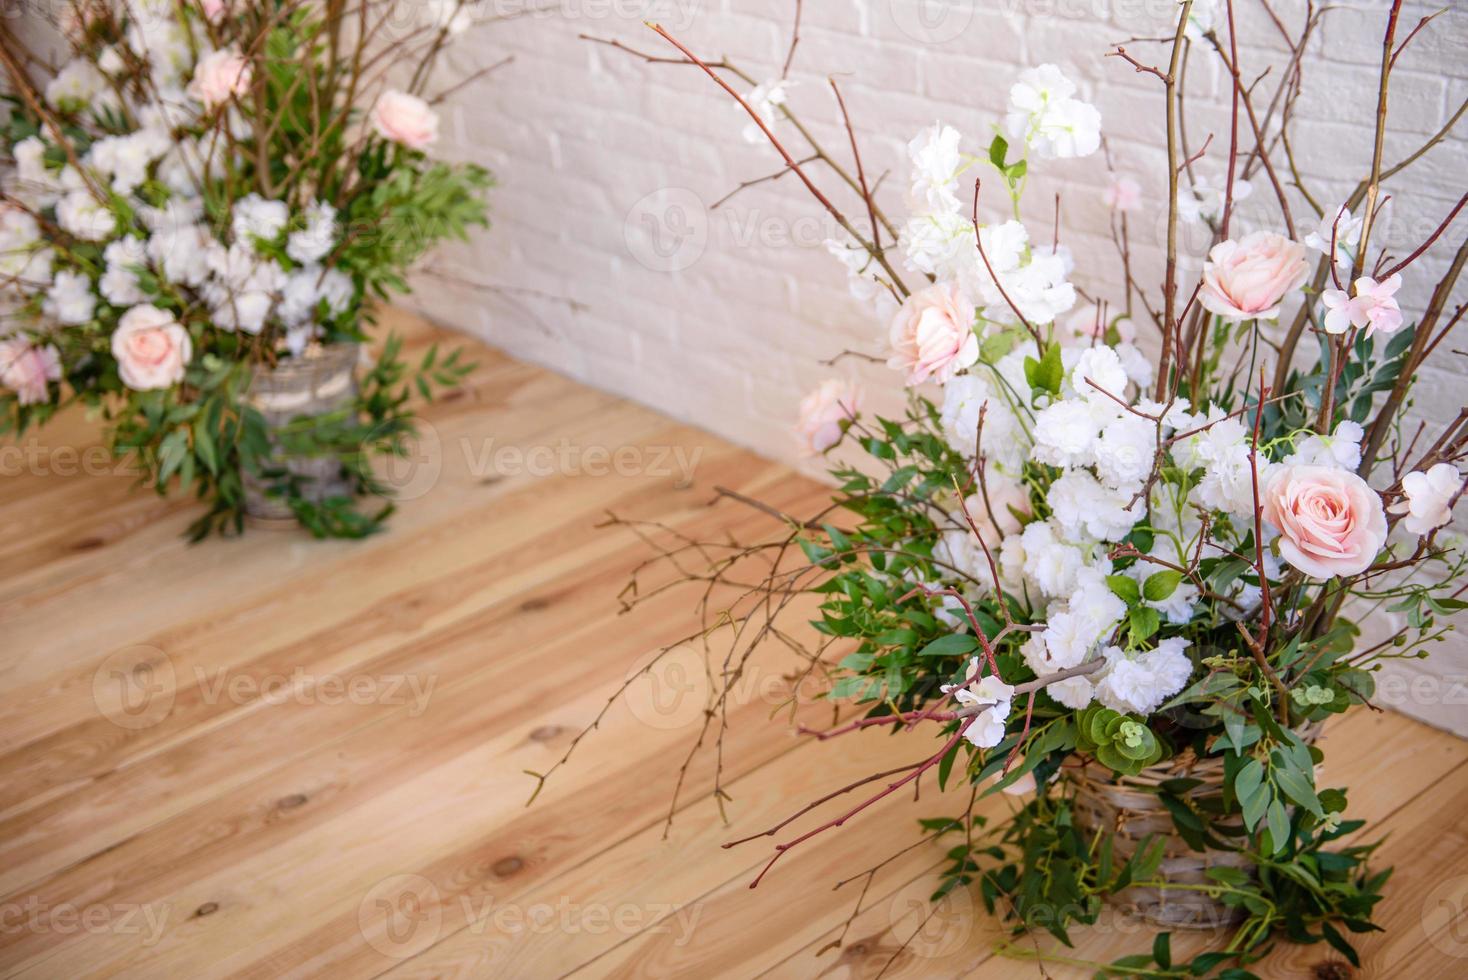 decorações de ramos com lindas flores rosa e brancas na cesta contra o fundo de uma parede de tijolos brancos foto